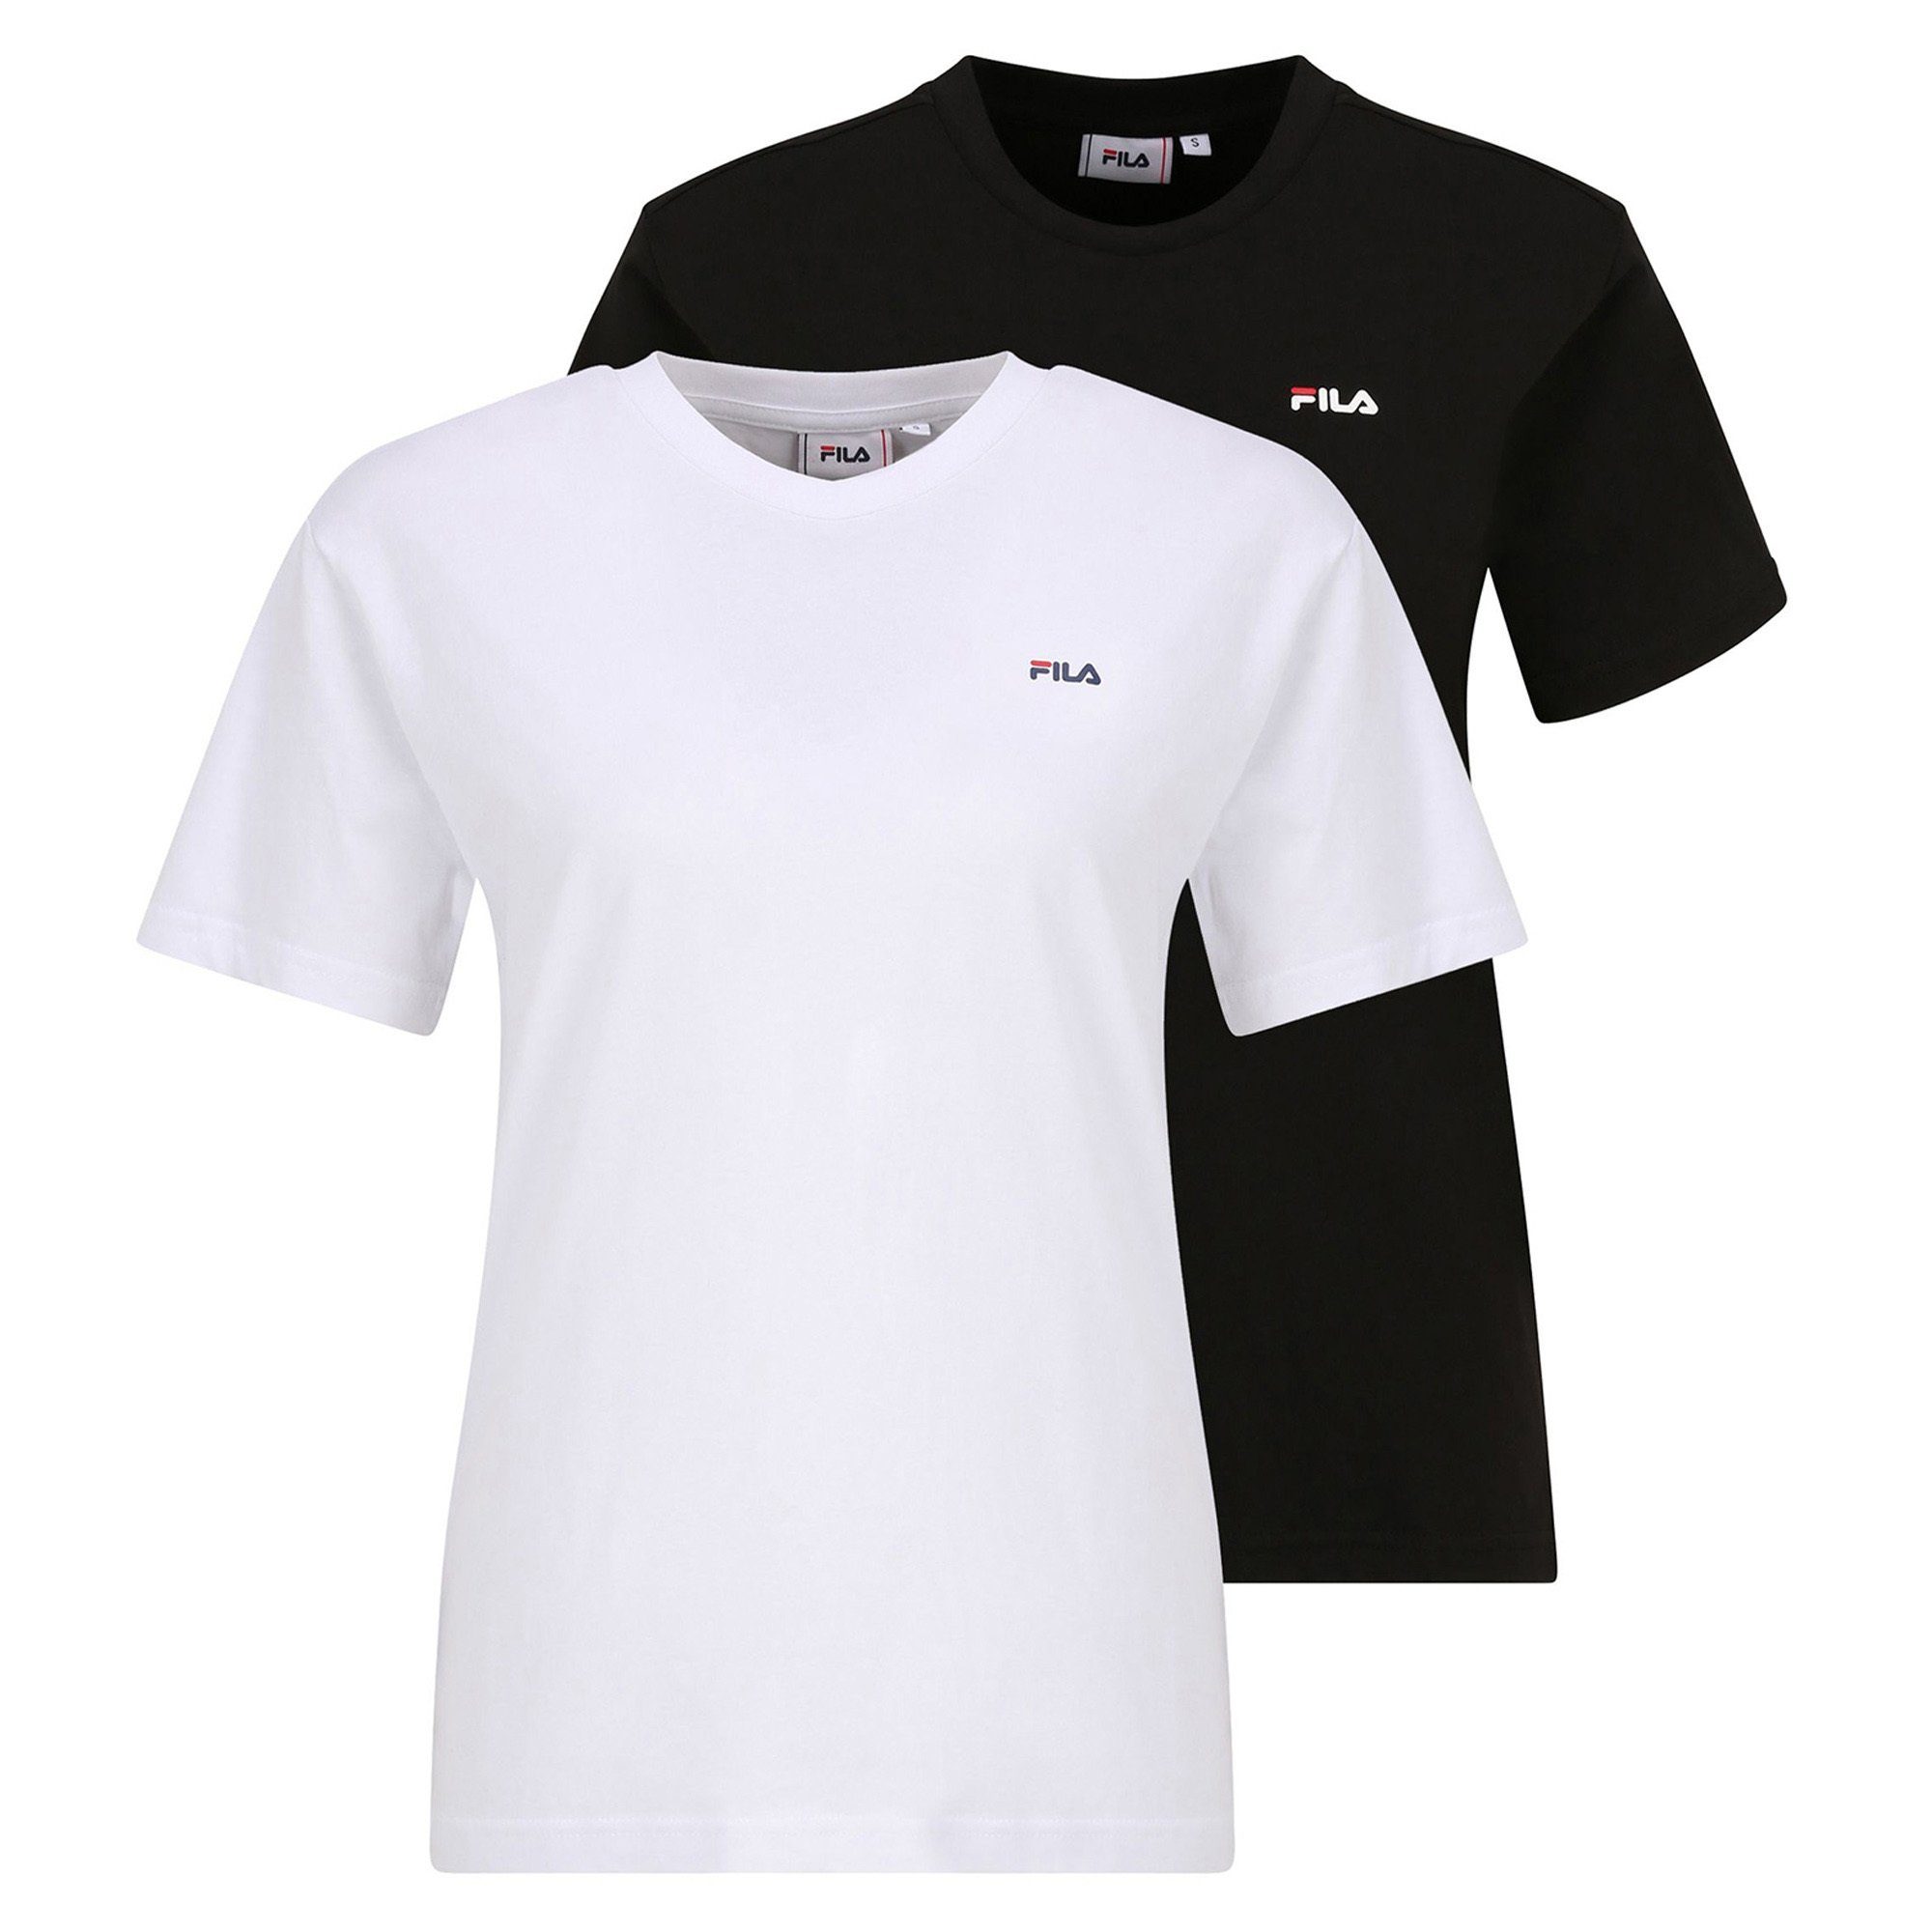 Fila T-Shirt Damen T-Shirt, 2er Pack - BARI tee double pack Schwarz/Weiß